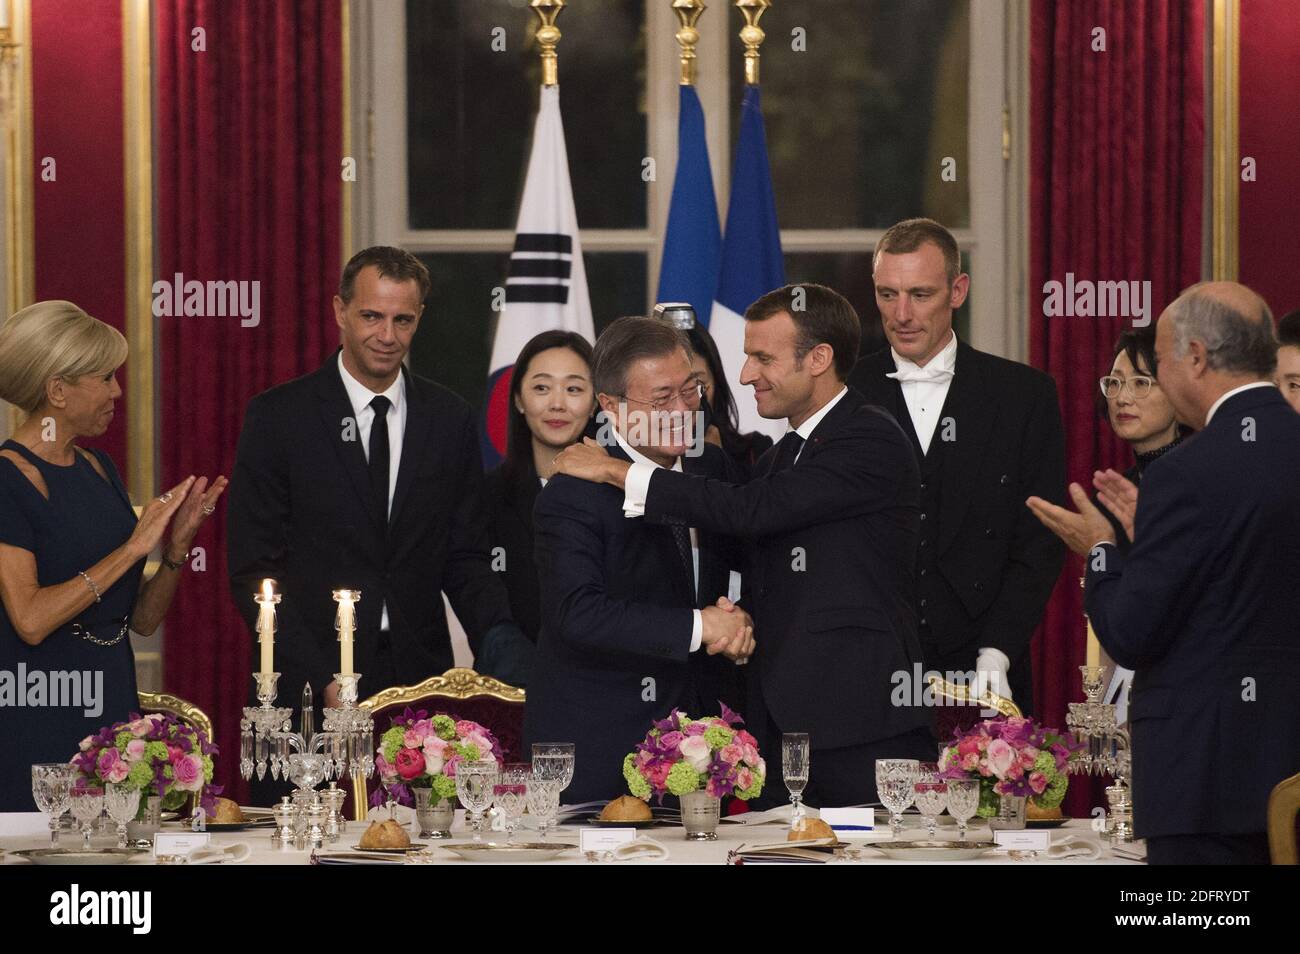 Il presidente francese Emmanuel Macron , sua moglie Brigitte Macron, il presidente sudcoreano Moon Jae-in e sua moglie Kim Jung-sook durante una cena di stato al Palazzo Presidenziale Elysee a Parigi il 15 ottobre 2018. Foto di Eliot Blondt/ABACAPRESS.COM Foto Stock